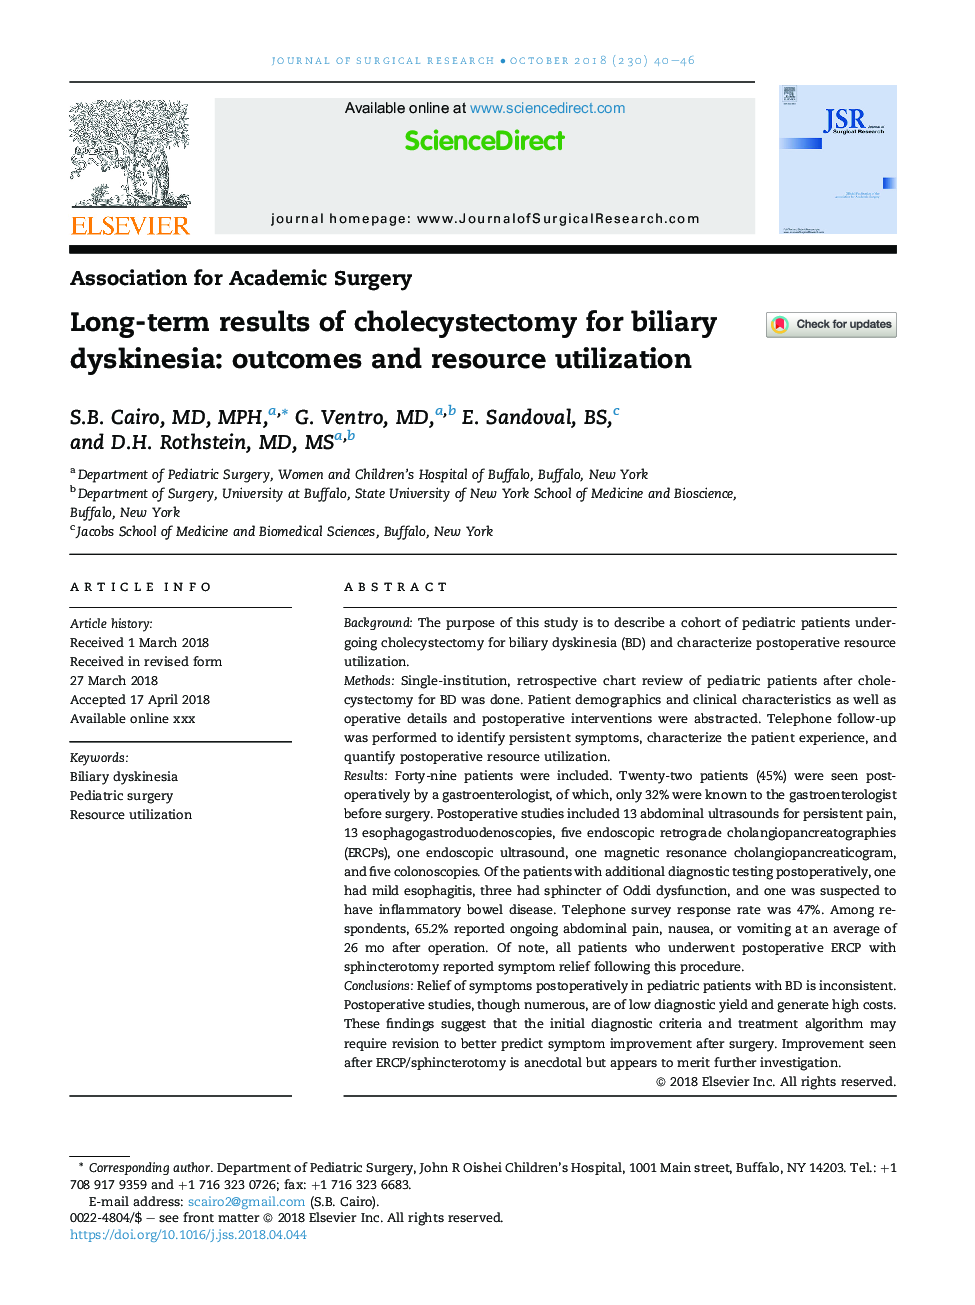 نتایج بلند مدت کولسیستکتومی برای دیسکینزی صفراوی: نتایج و استفاده از منابع 